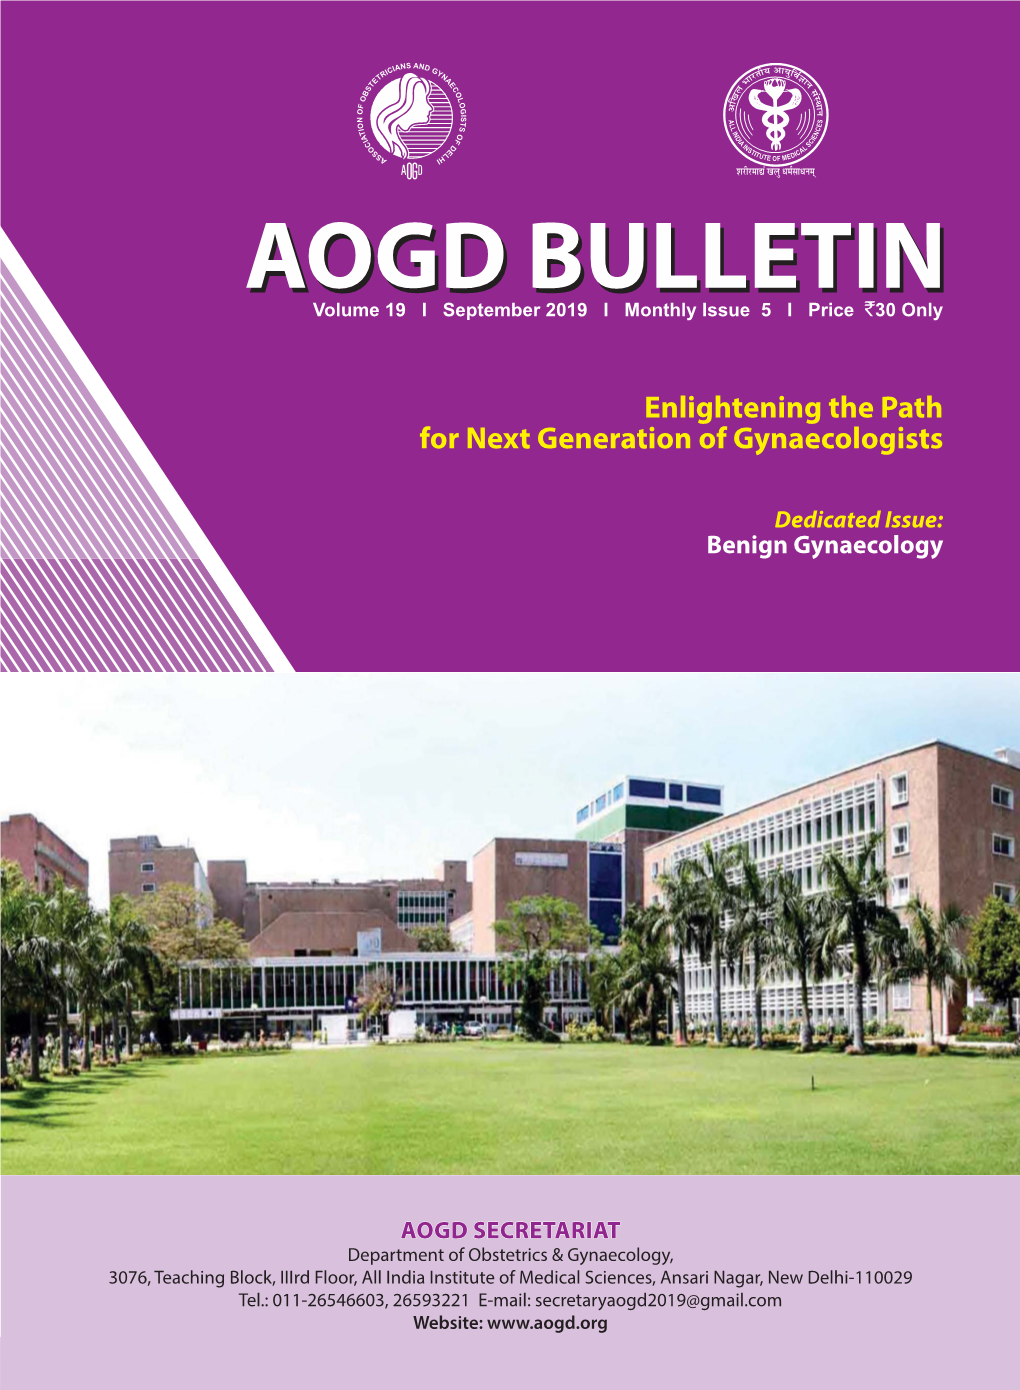 AOGD Bulletin September 2019.Indd